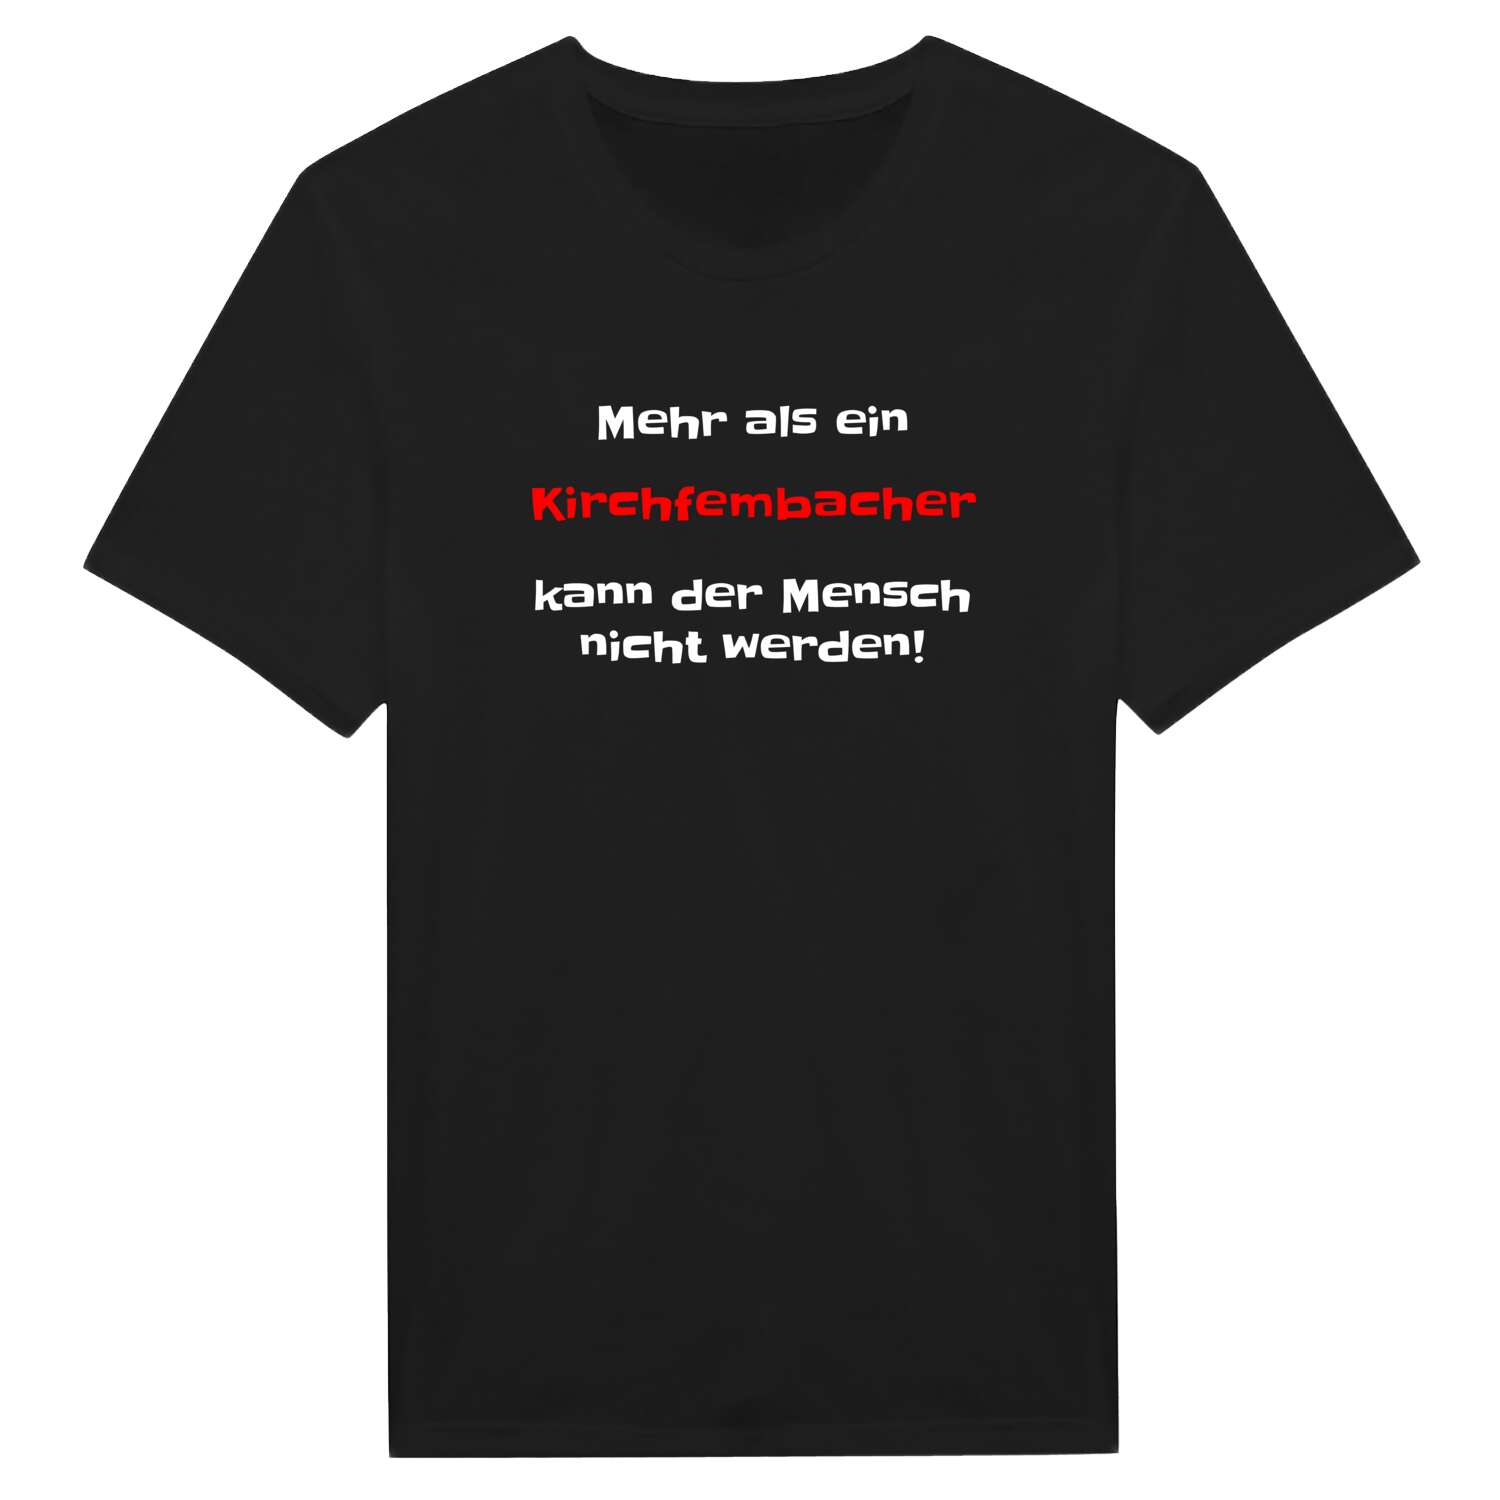 Kirchfembach T-Shirt »Mehr als ein«